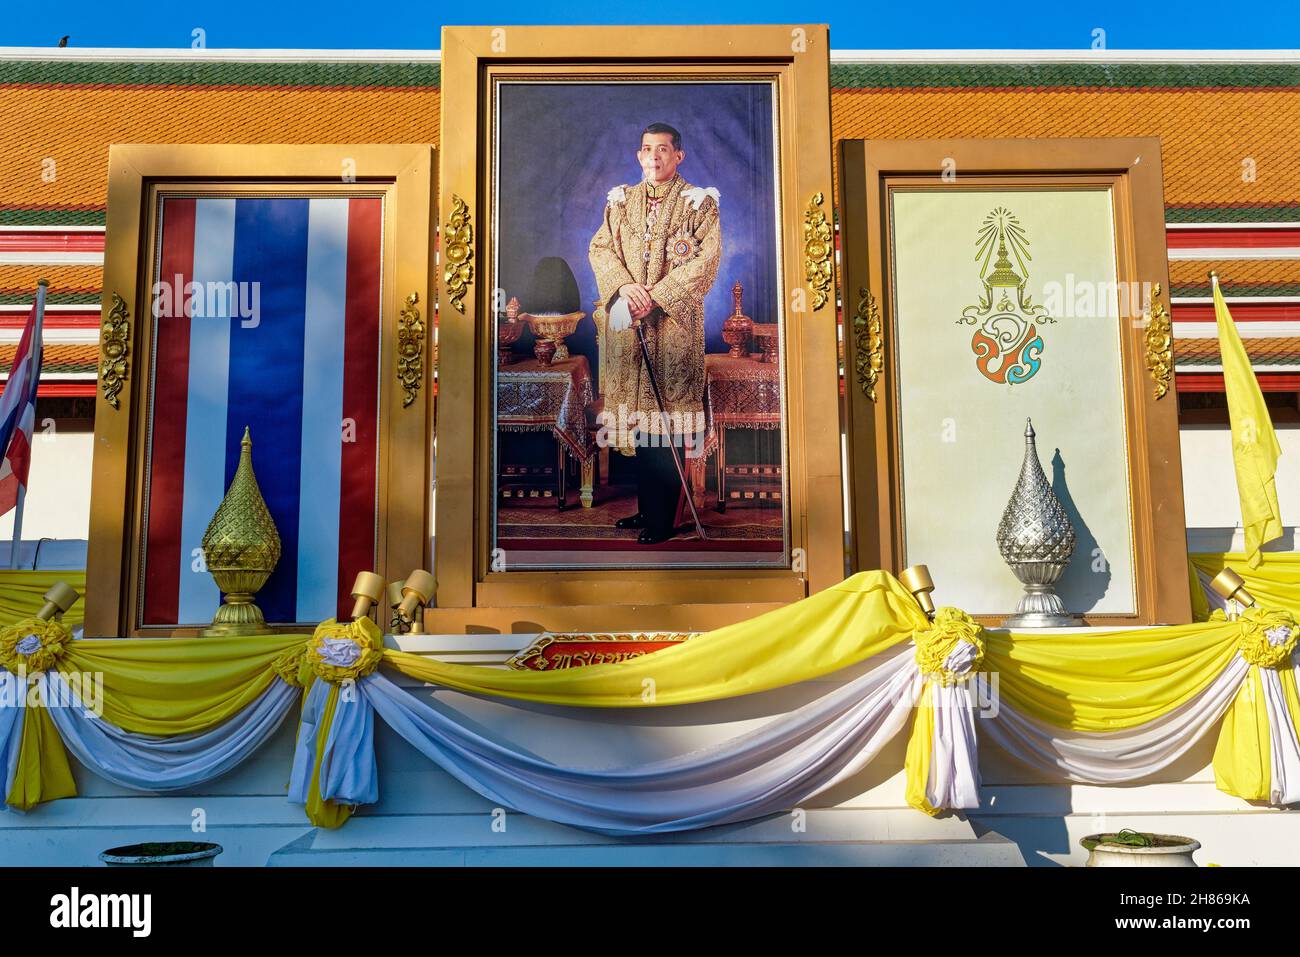 Portrait du roi thaïlandais Maha Vajiralongkorn, drapeau thaïlandais (l) et emblème royal à l'extérieur (temple) de Wat po, Bangkok, Thaïlande Banque D'Images